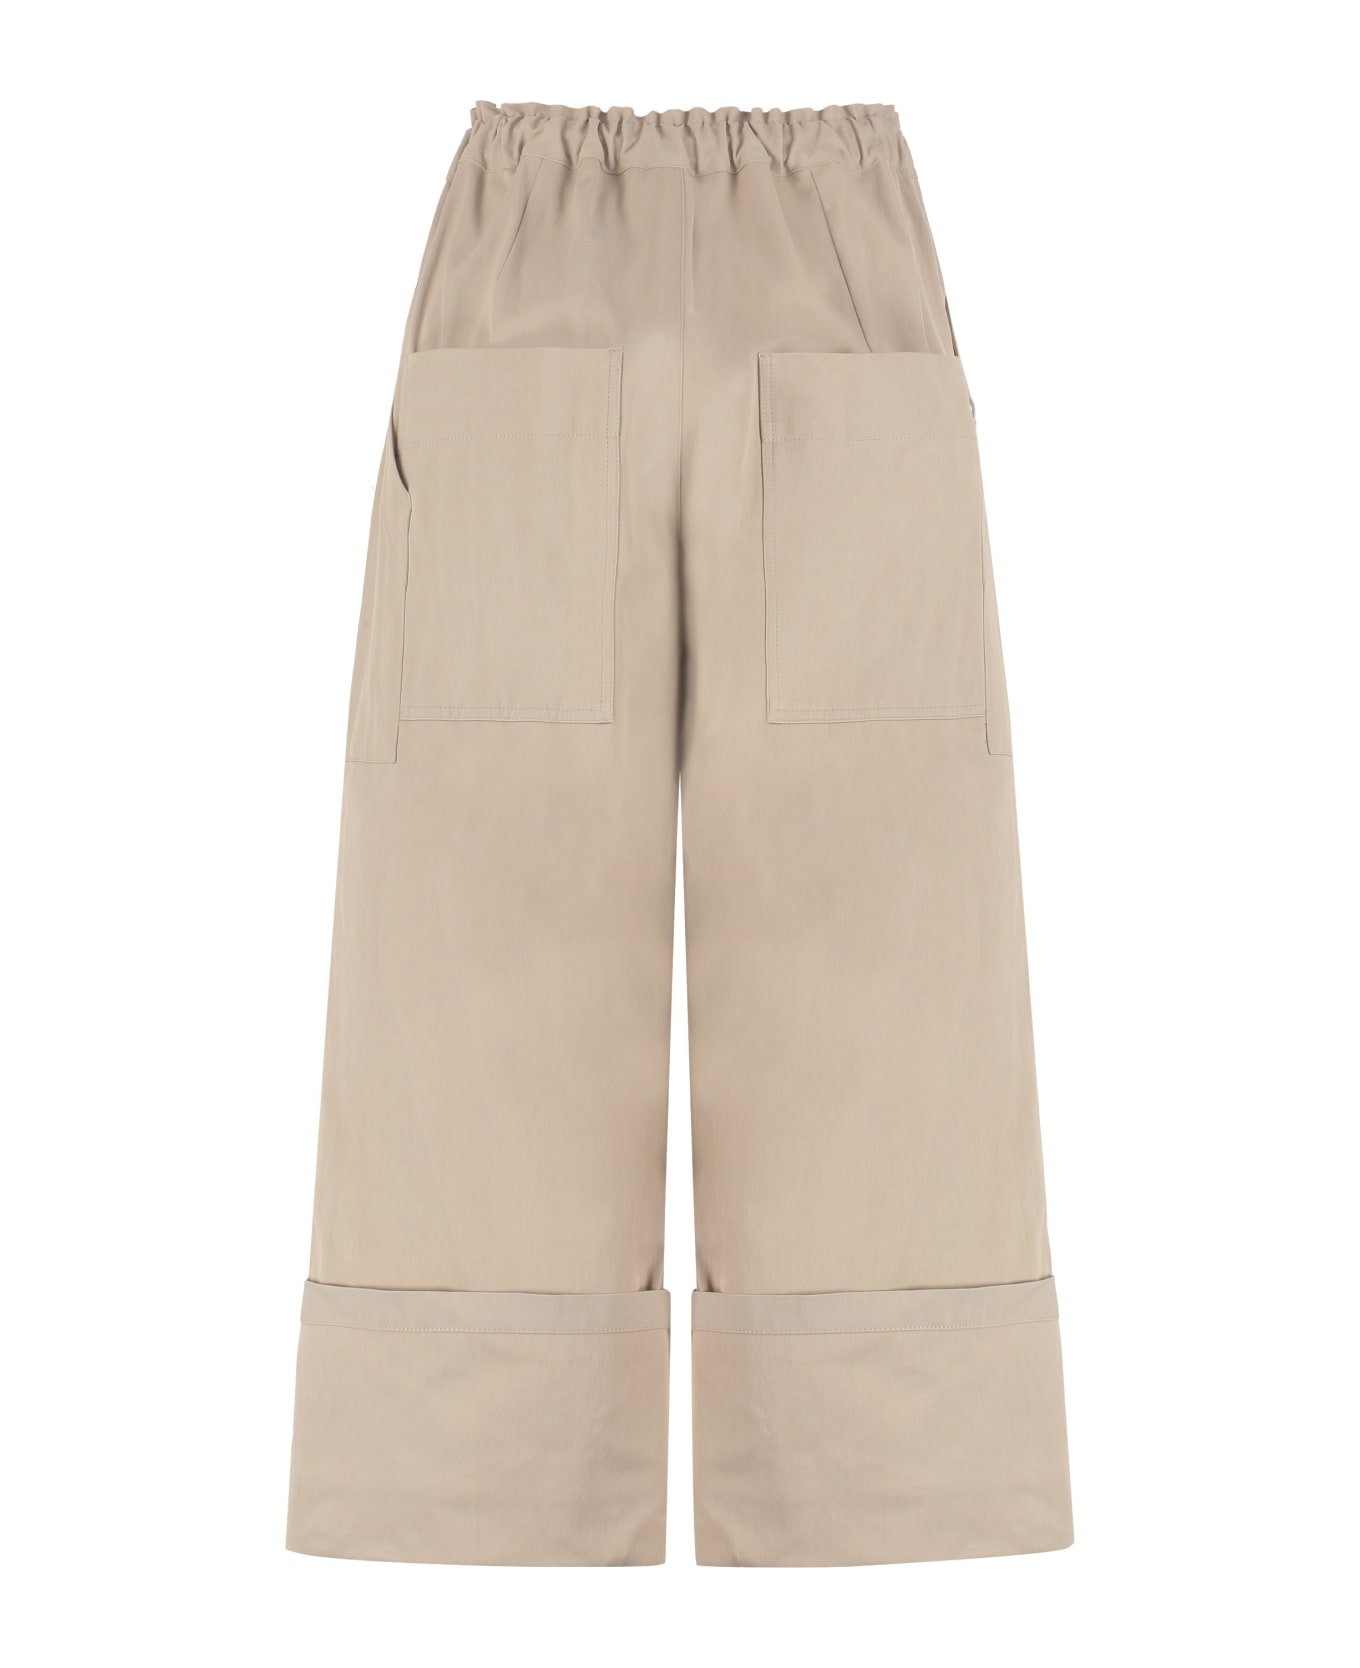 Moncler Genius 2 Moncler 1952 - Cotton Blend Wide Leg Trousers - Beige